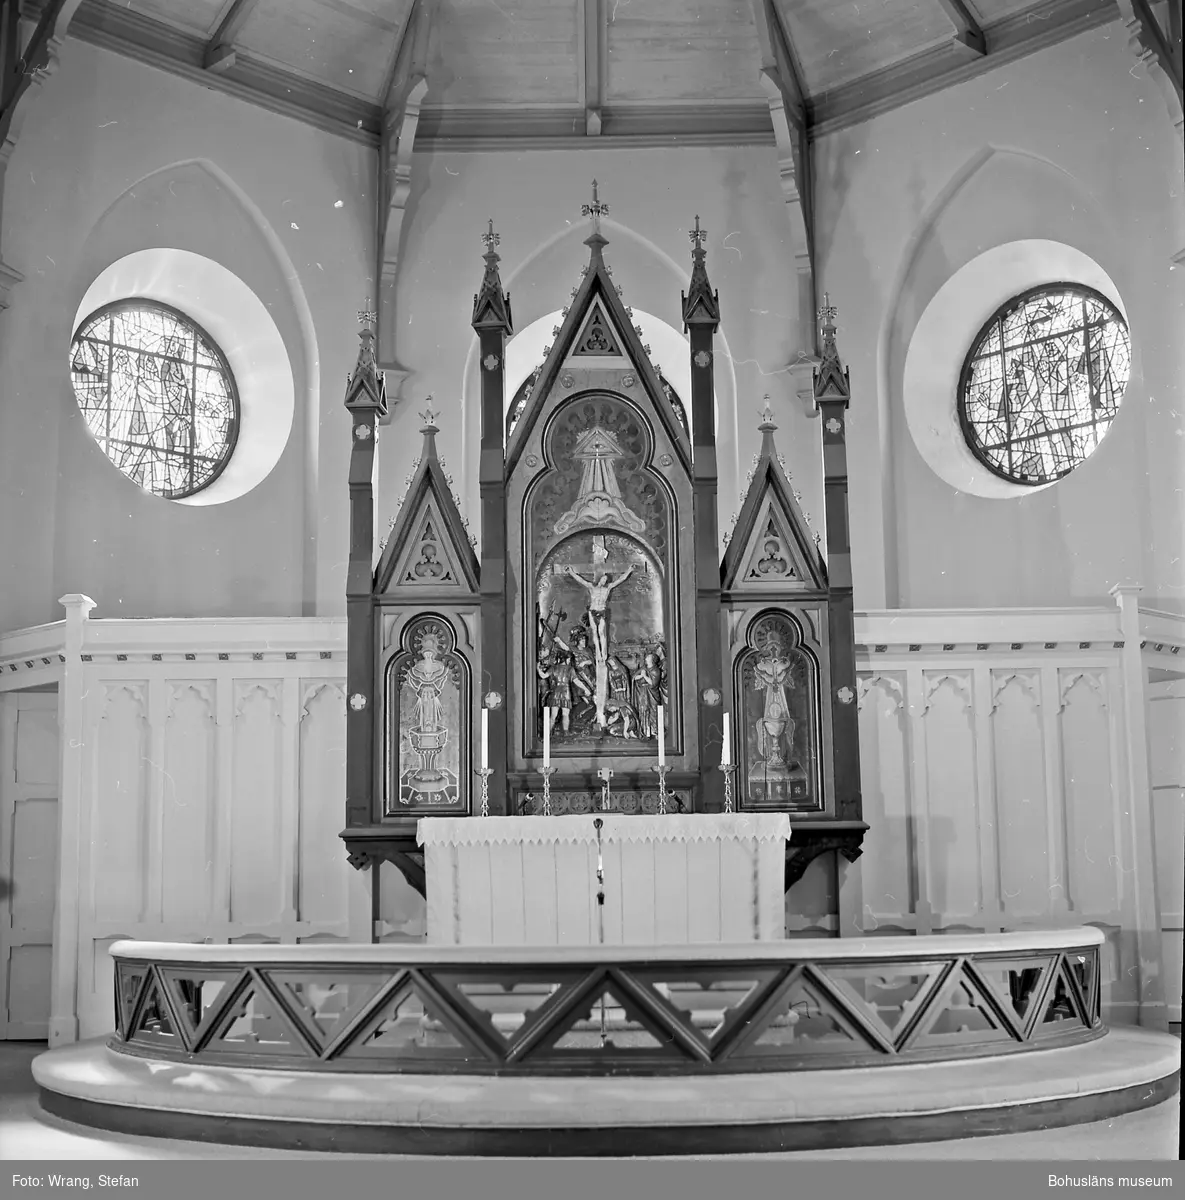 Text till bilden: "Grebbestads kyrka. Altaret".